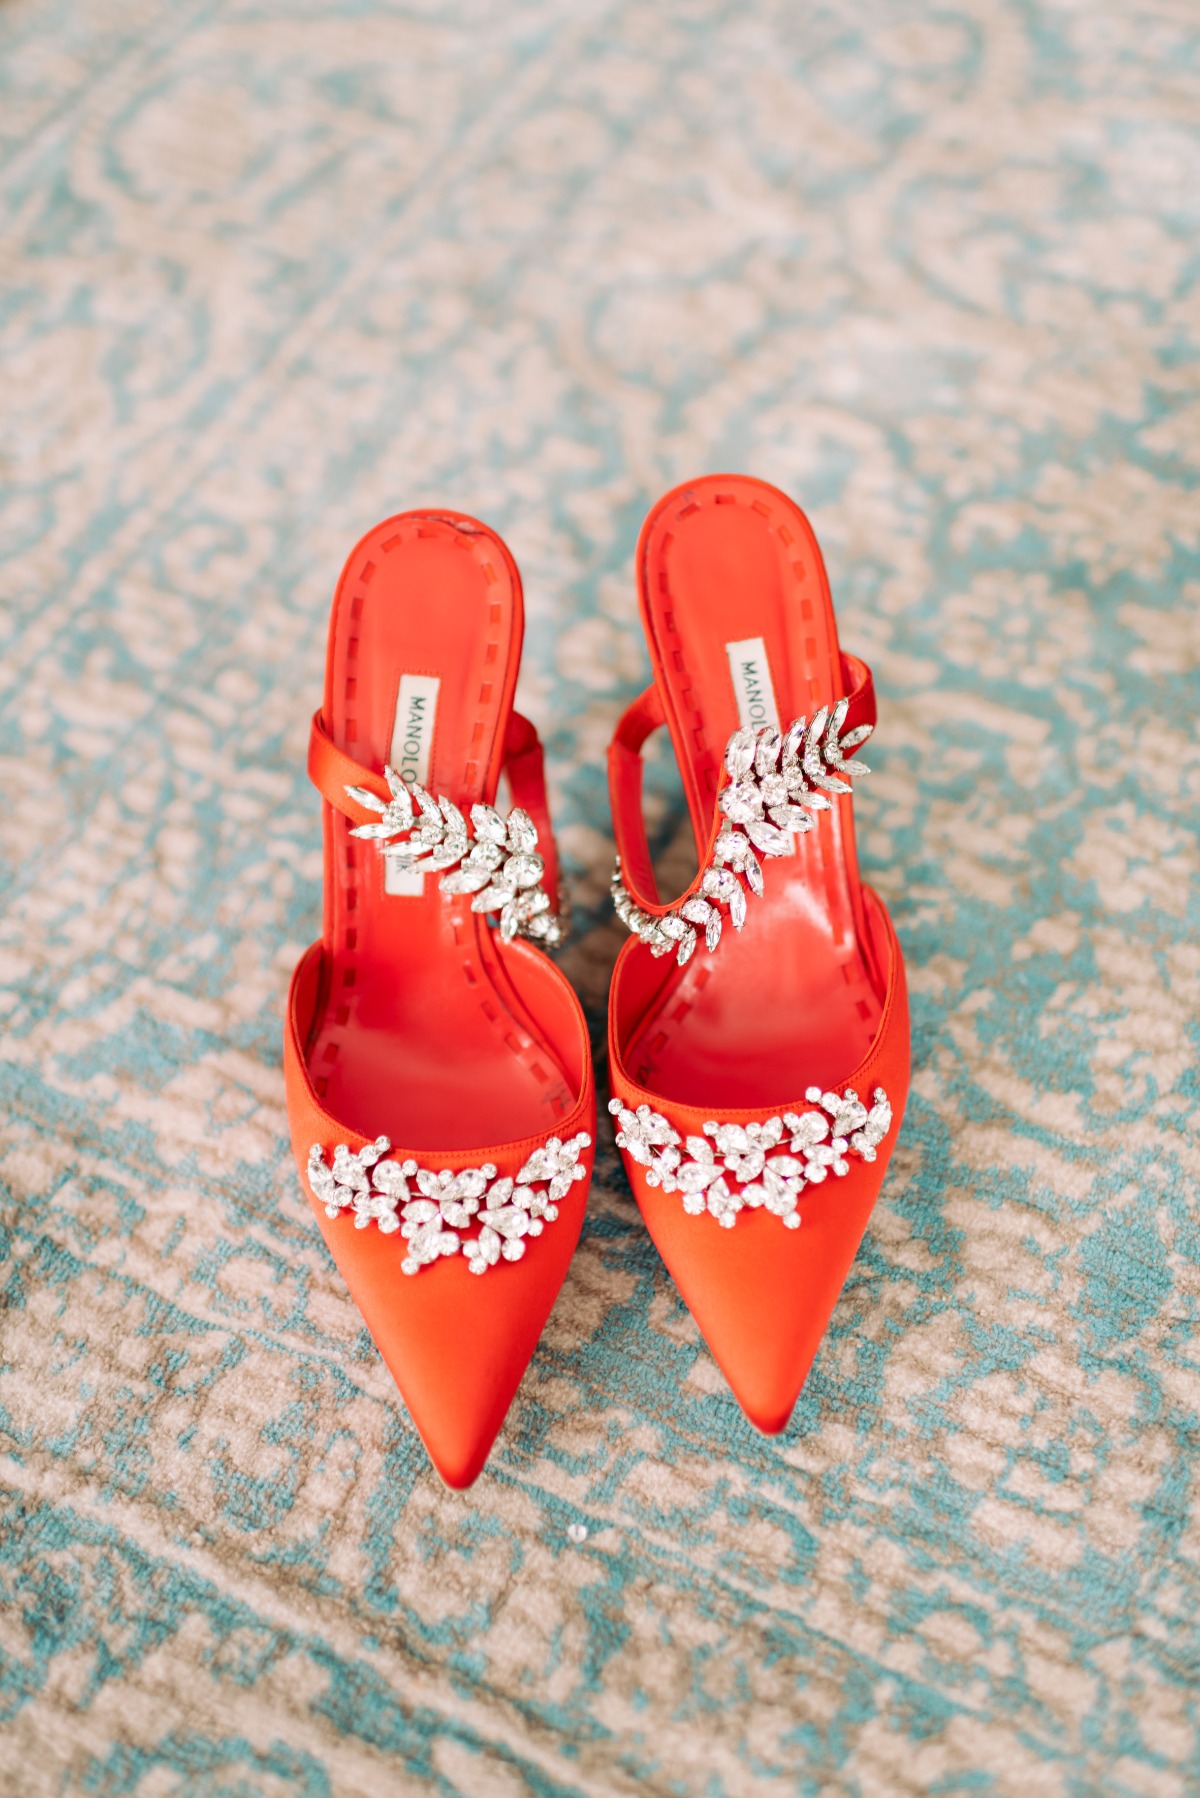 red Manolo Blahnik heels